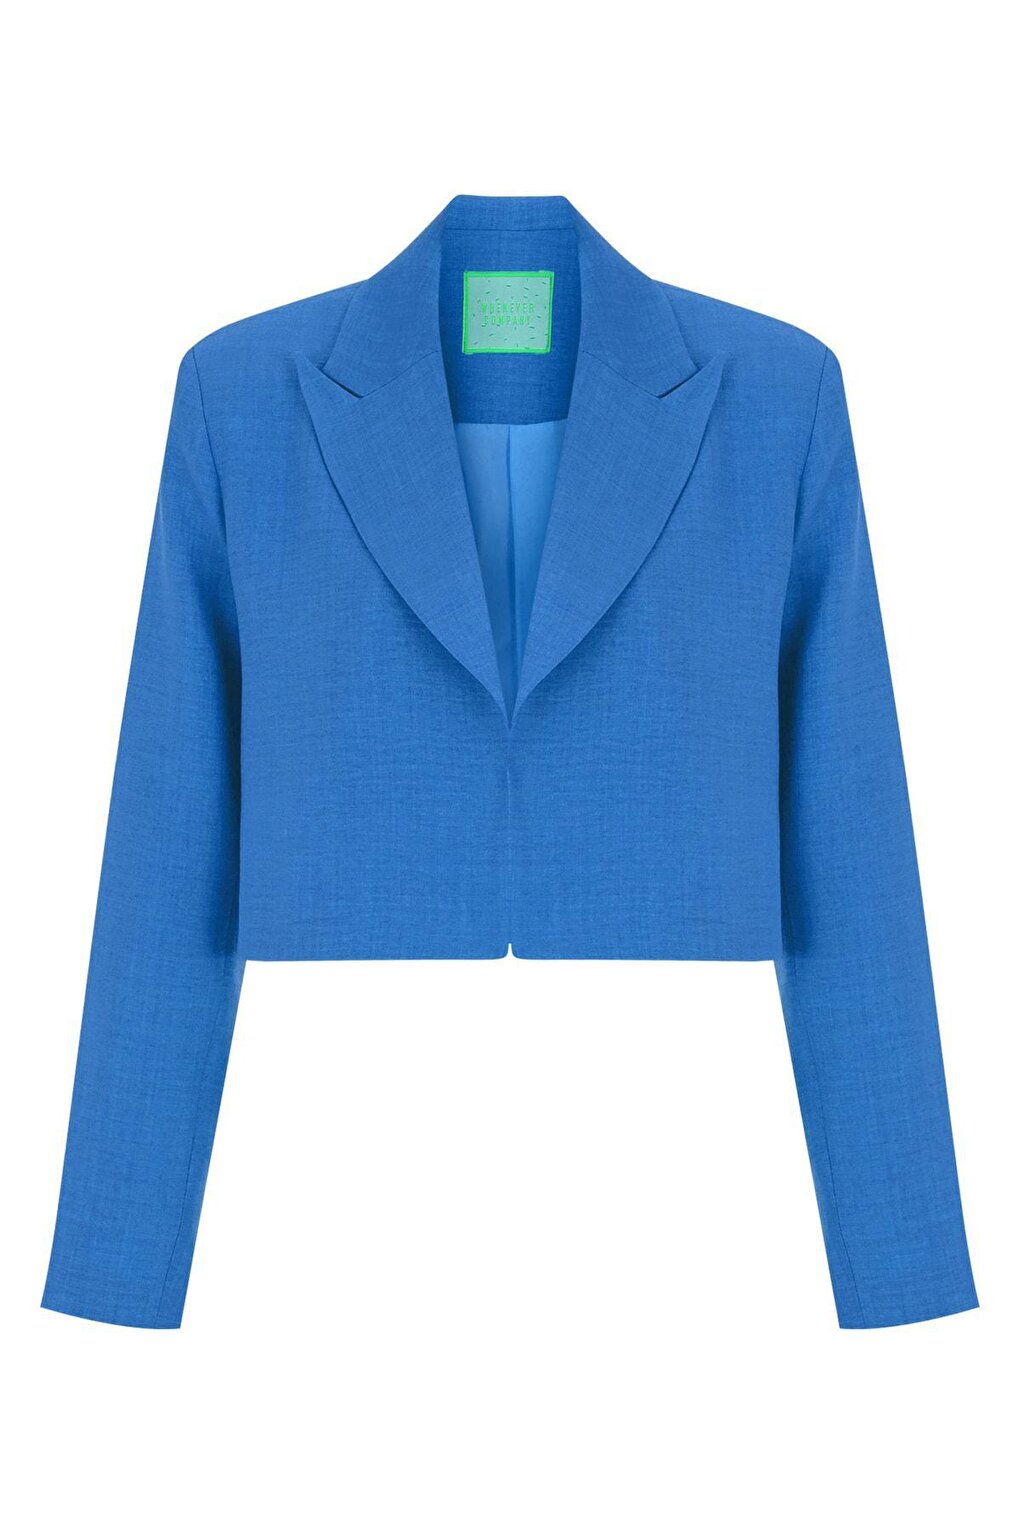 Укороченная куртка из льна синего цвета WHENEVER COMPANY